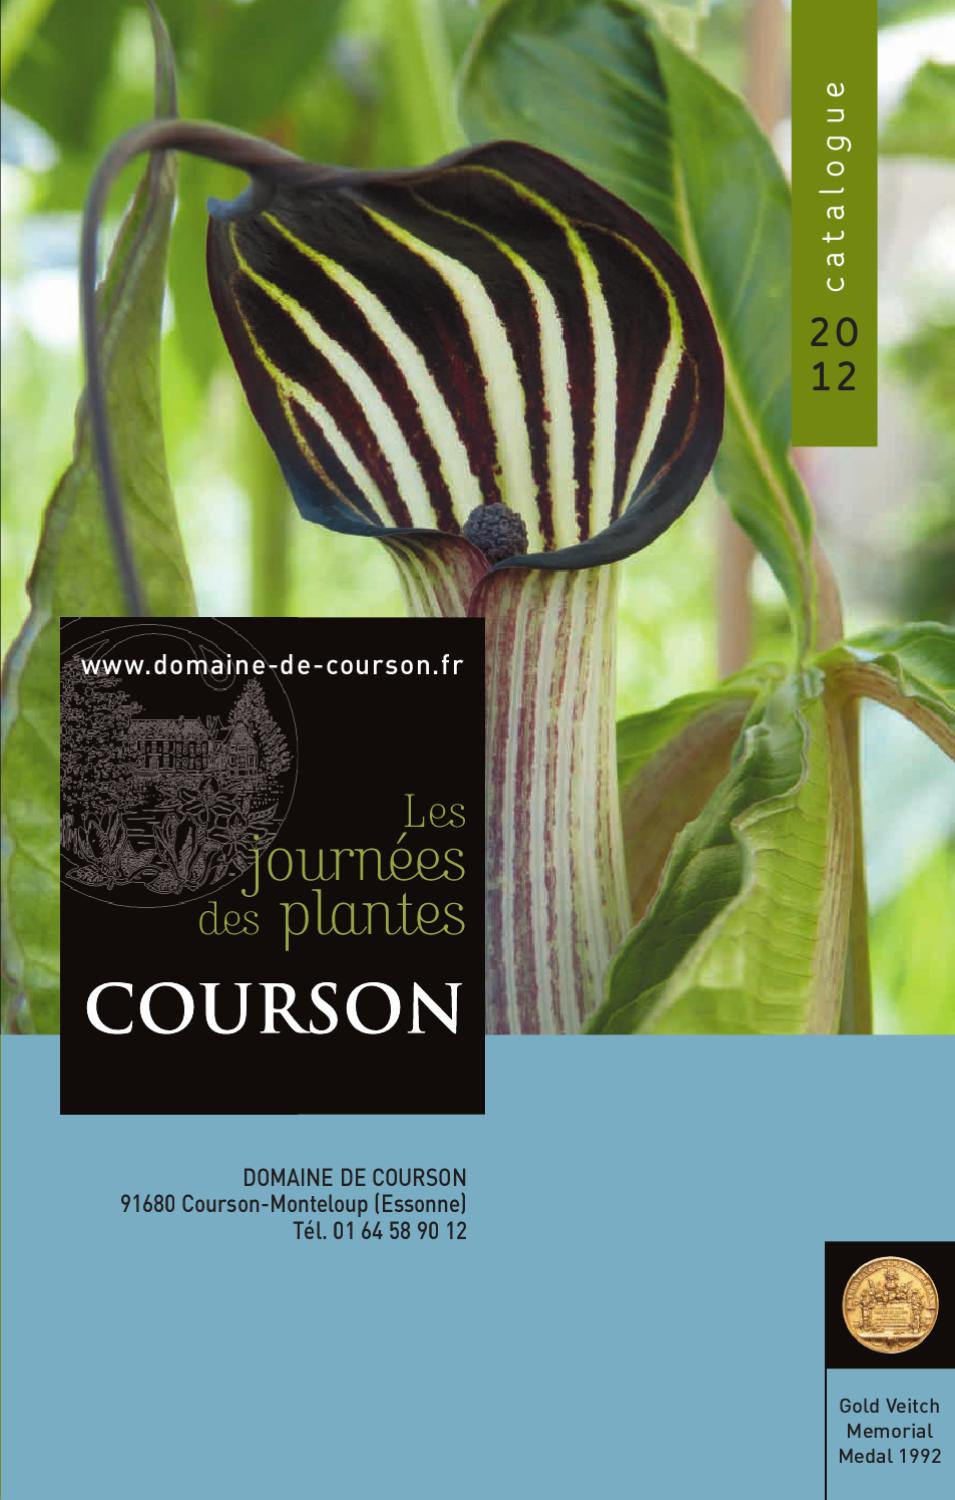 Comment Jardiner Avec La Lune Best Of Catalogue Des Journées De Courson 2012 by Domaine De Courson